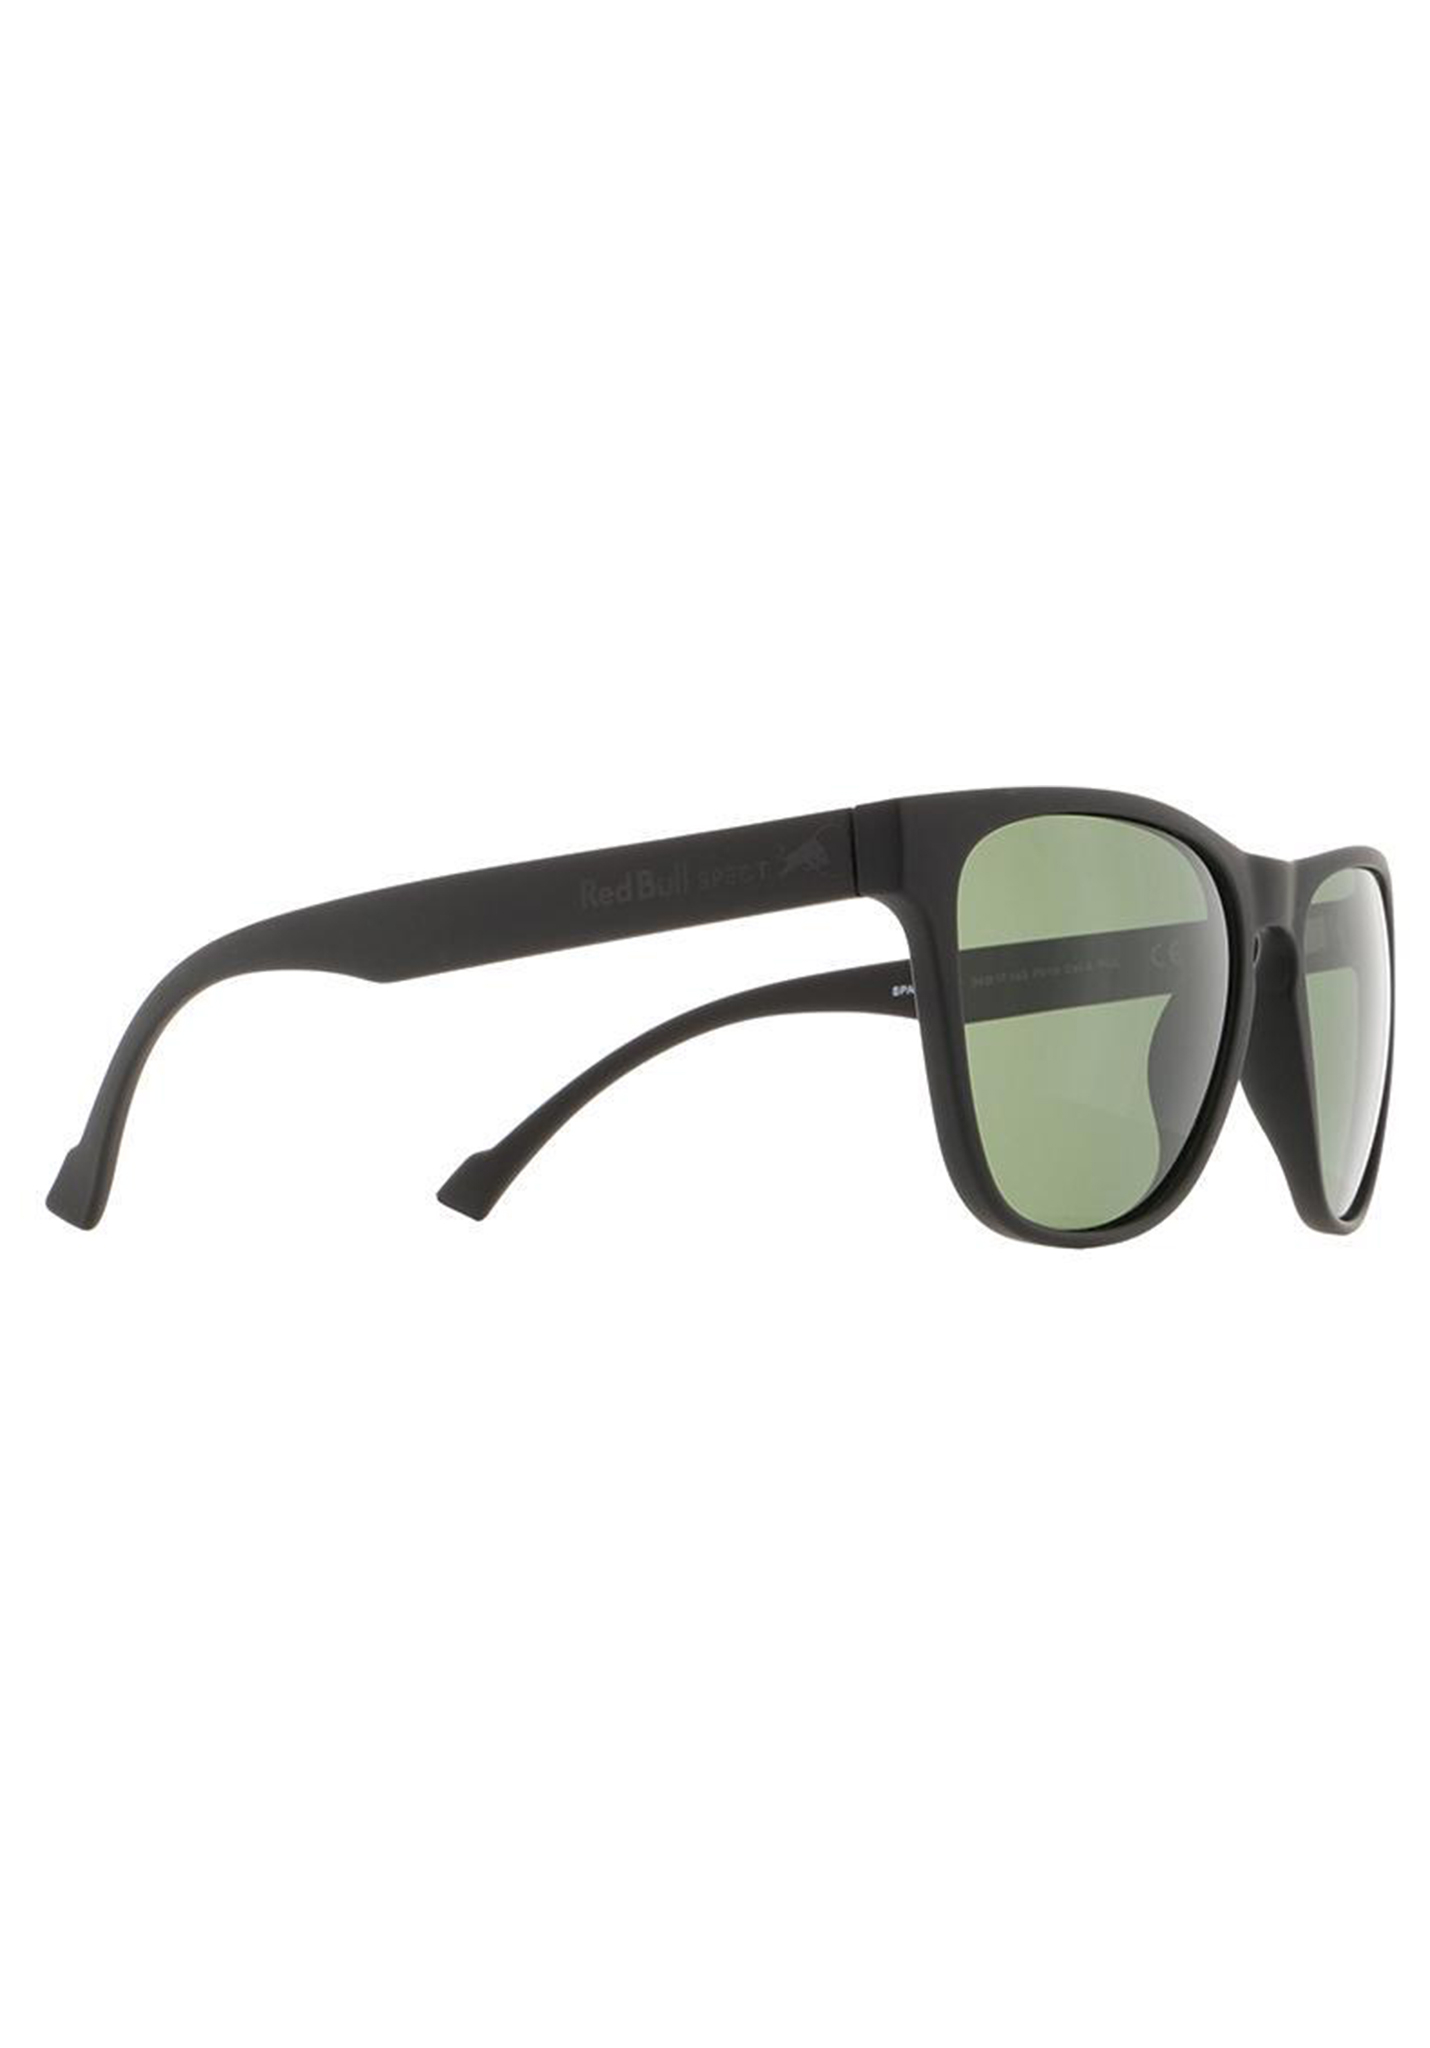 Red Bull SPECT Eyewear Spark Sonnenbrillen schwarz/grün pol One Size